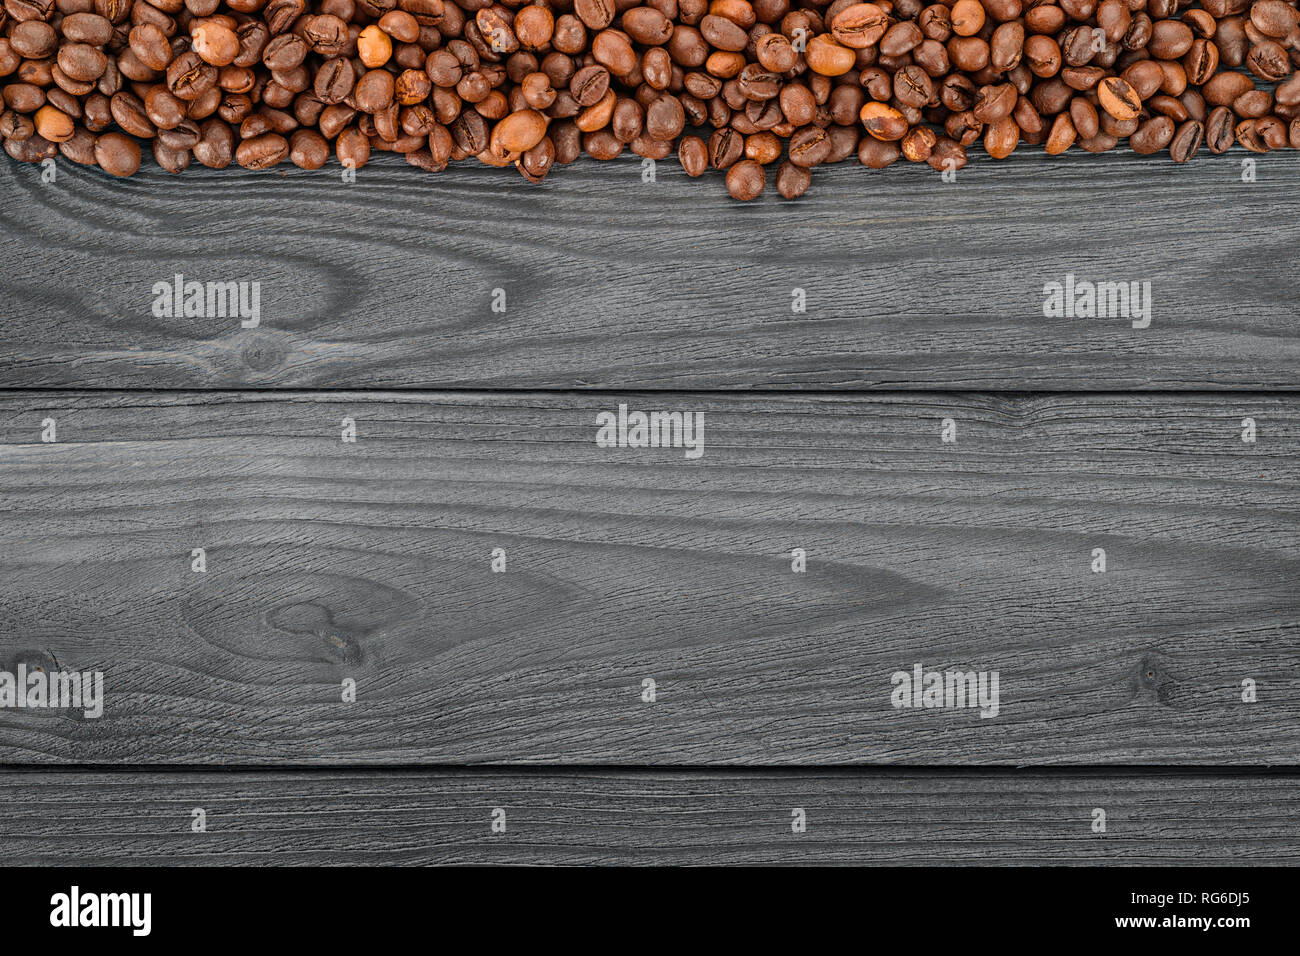 Kaffeebohnen auf Holztisch, Ansicht von oben. Kaffee Thema Template und Hintergrund mit Kopie Raum Stockfoto